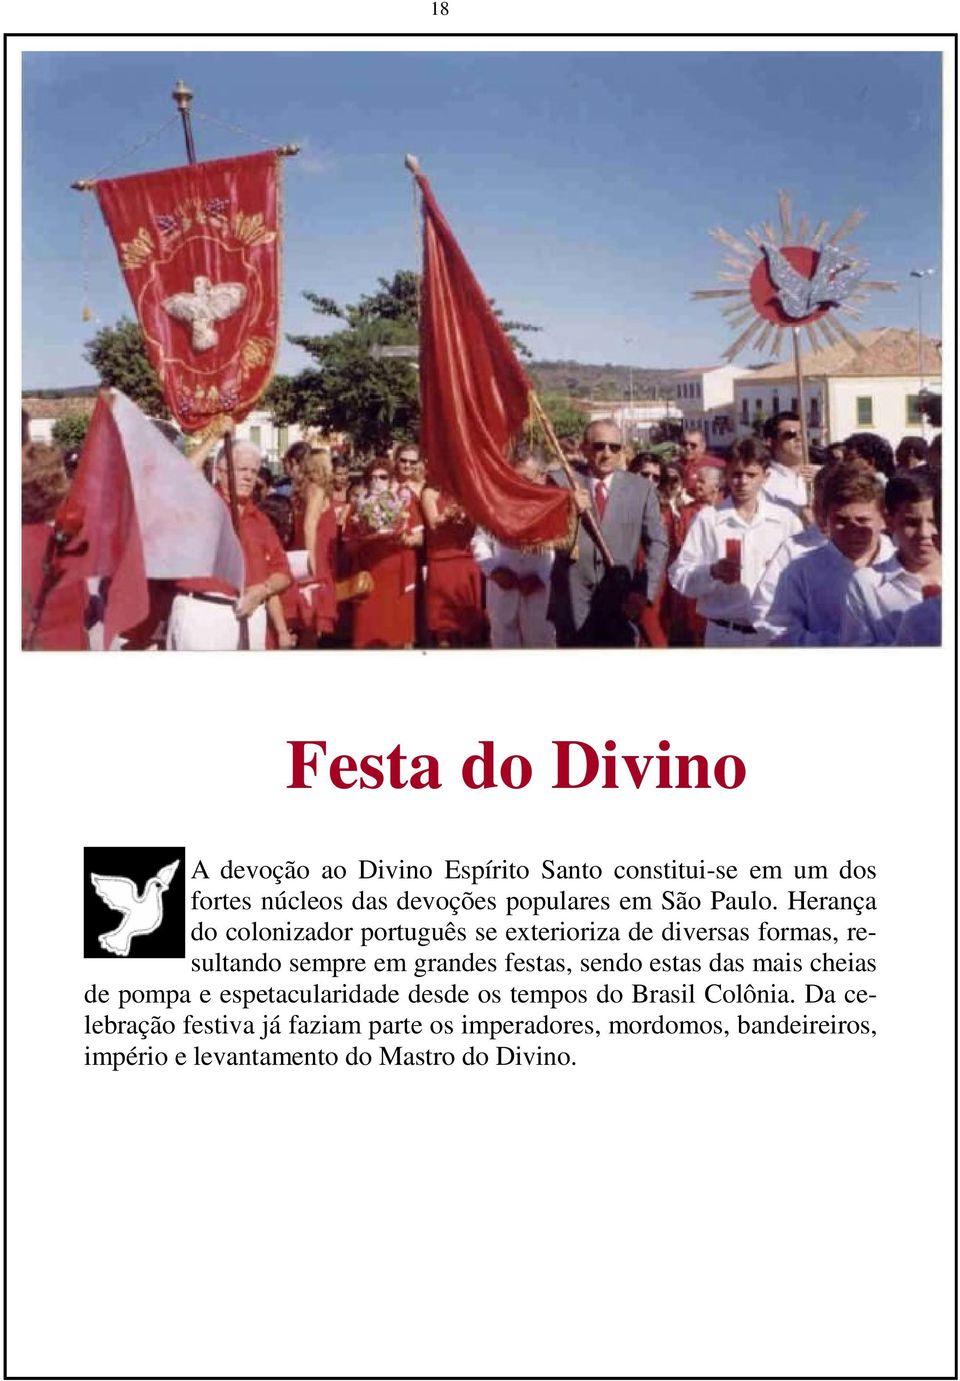 Herança do colonizador português se exterioriza de diversas formas, resultando sempre em grandes festas, sendo